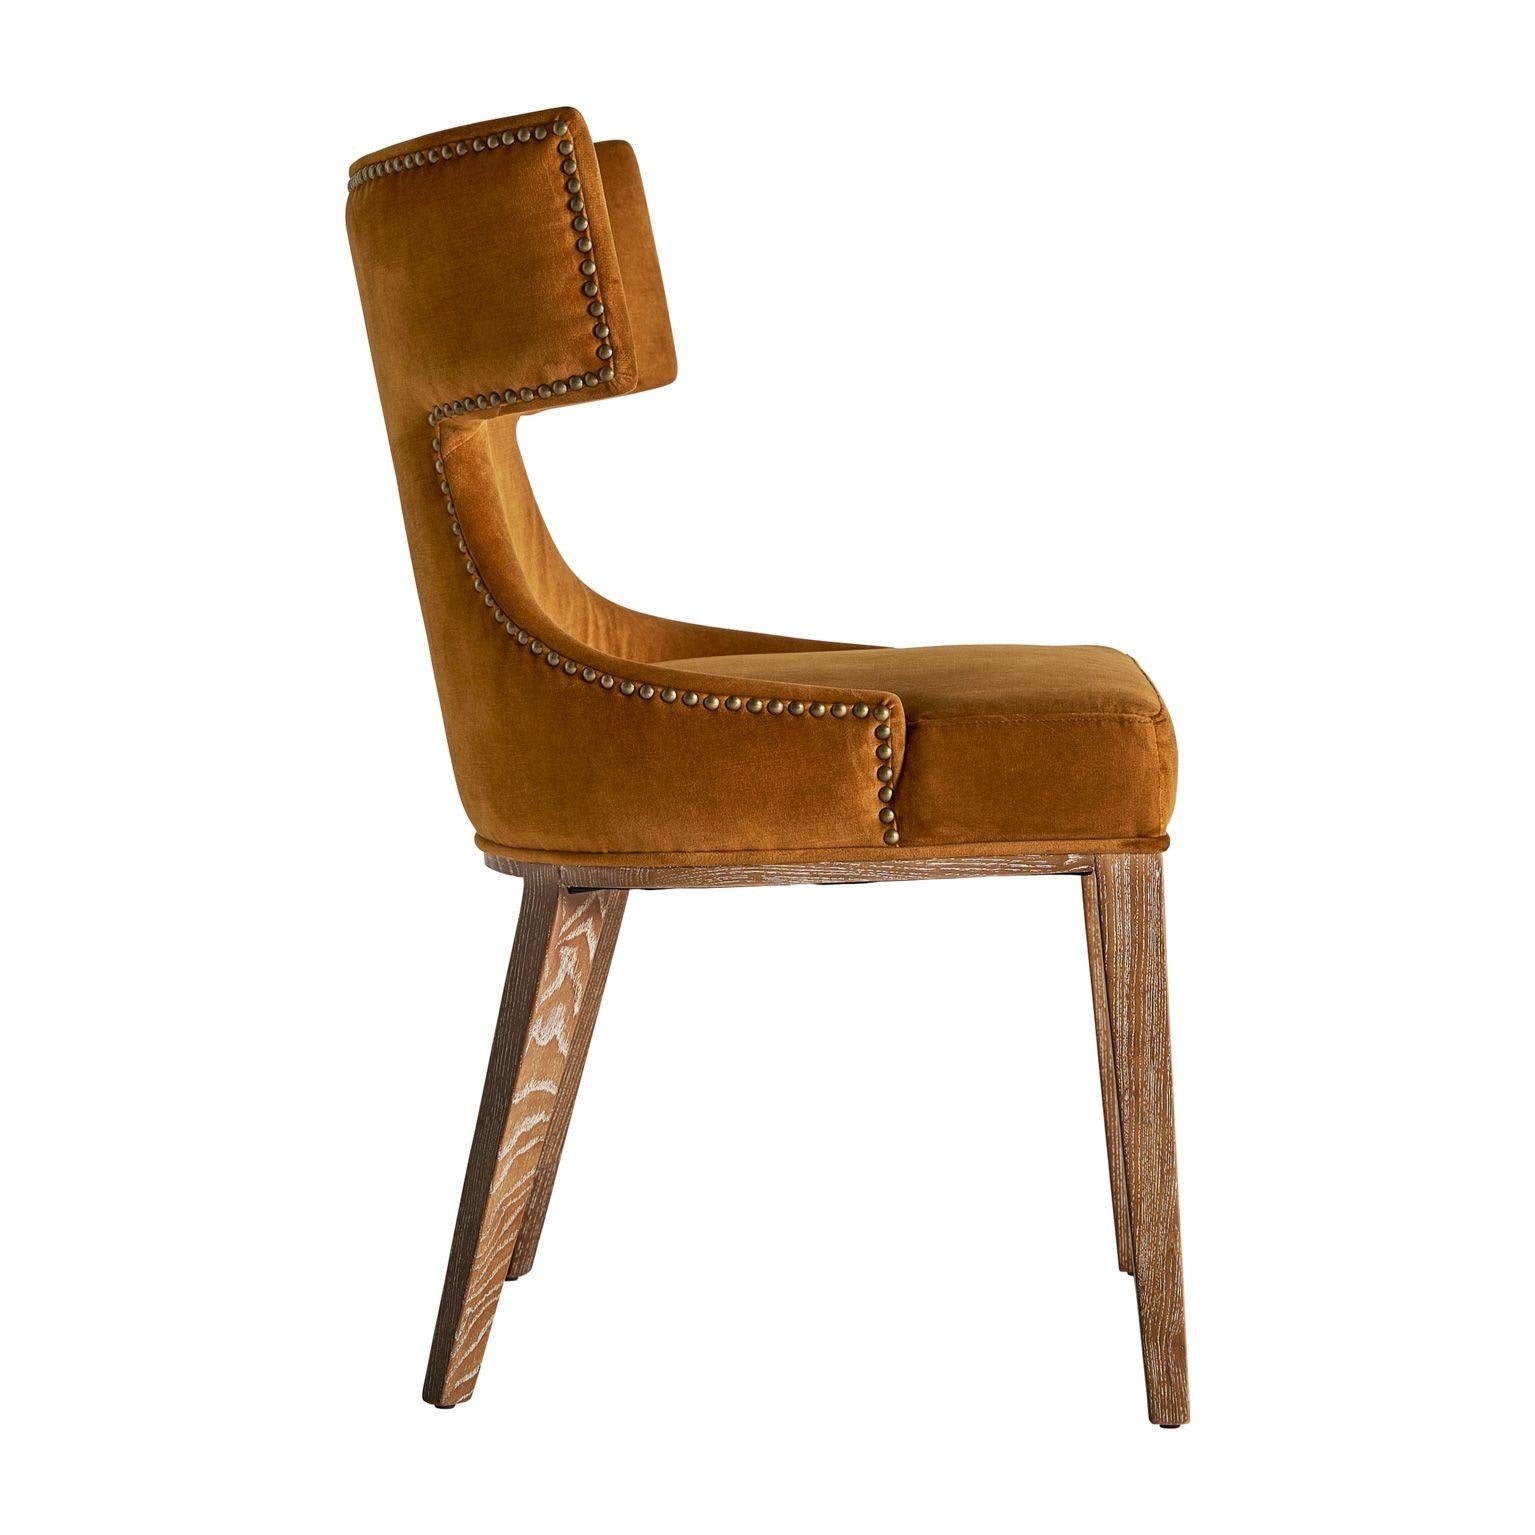 Ce fauteuil incarne l'aisance, la douceur et le confort. Fabriqué en lin et structure en bois massif avec base pivotante. Le secret réside dans les détails, c'est pourquoi cette pièce se distingue par ses contours incurvés et la grandeur de son